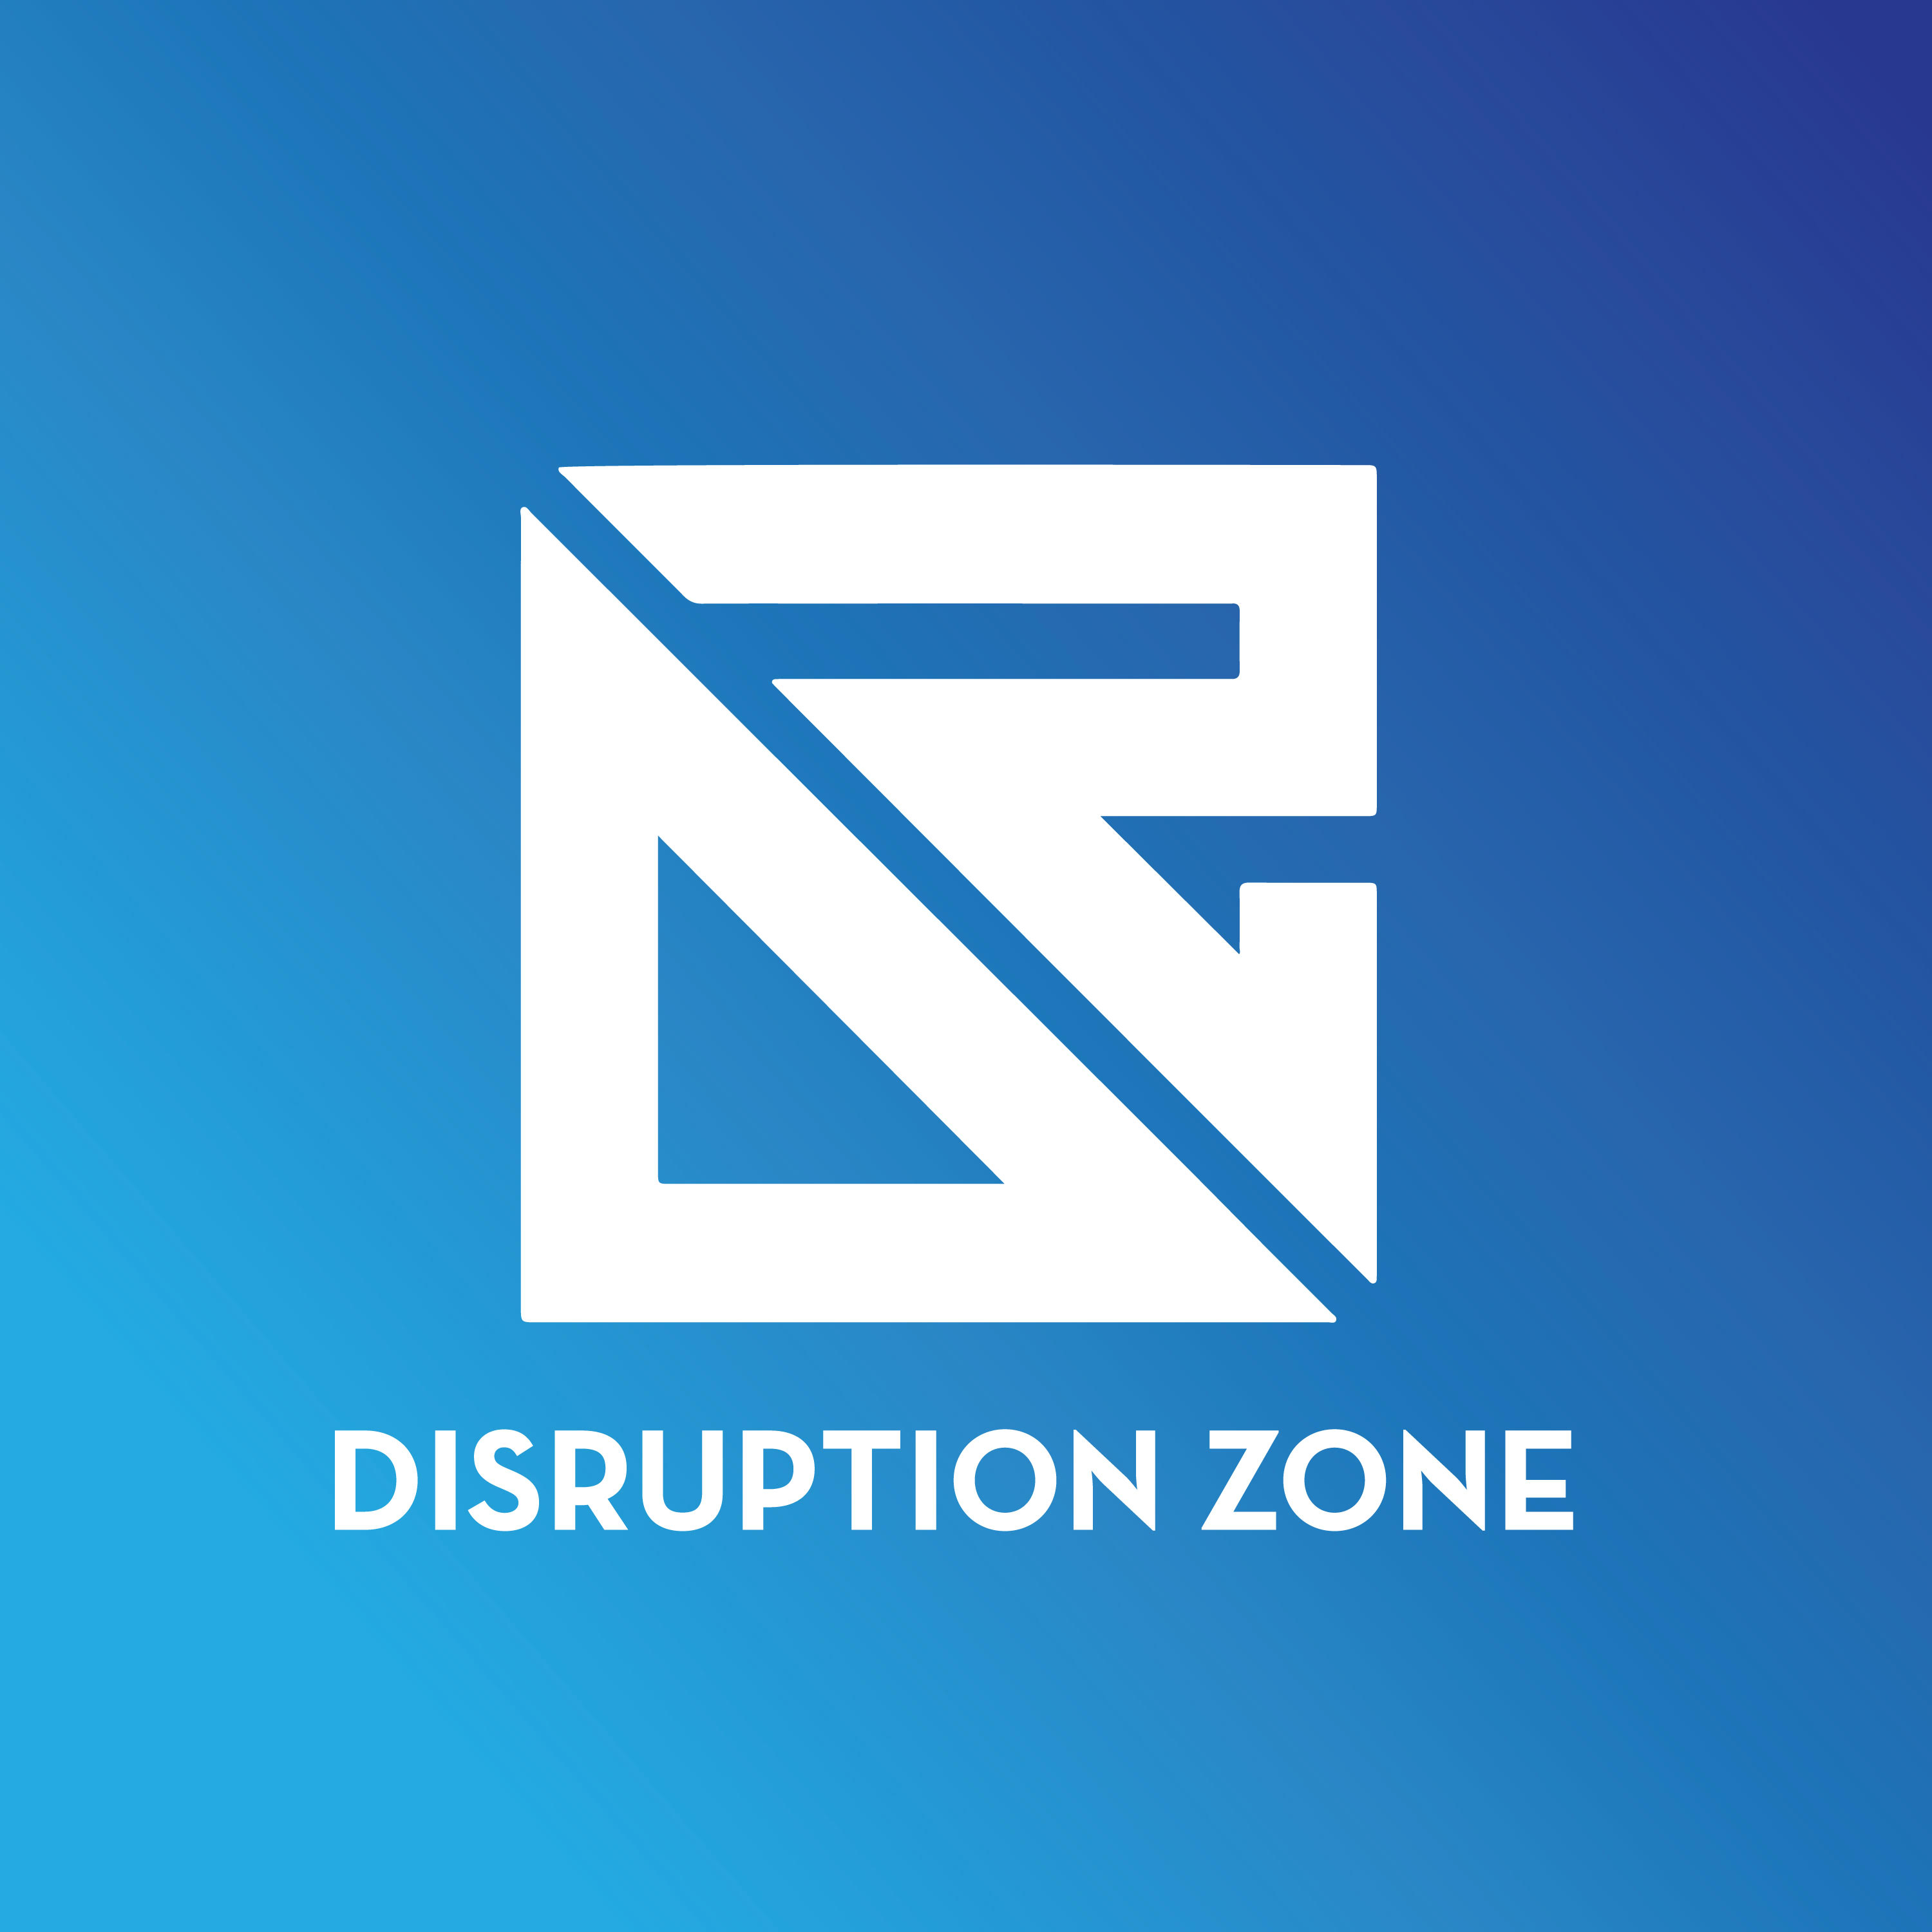 The Disruption Zone